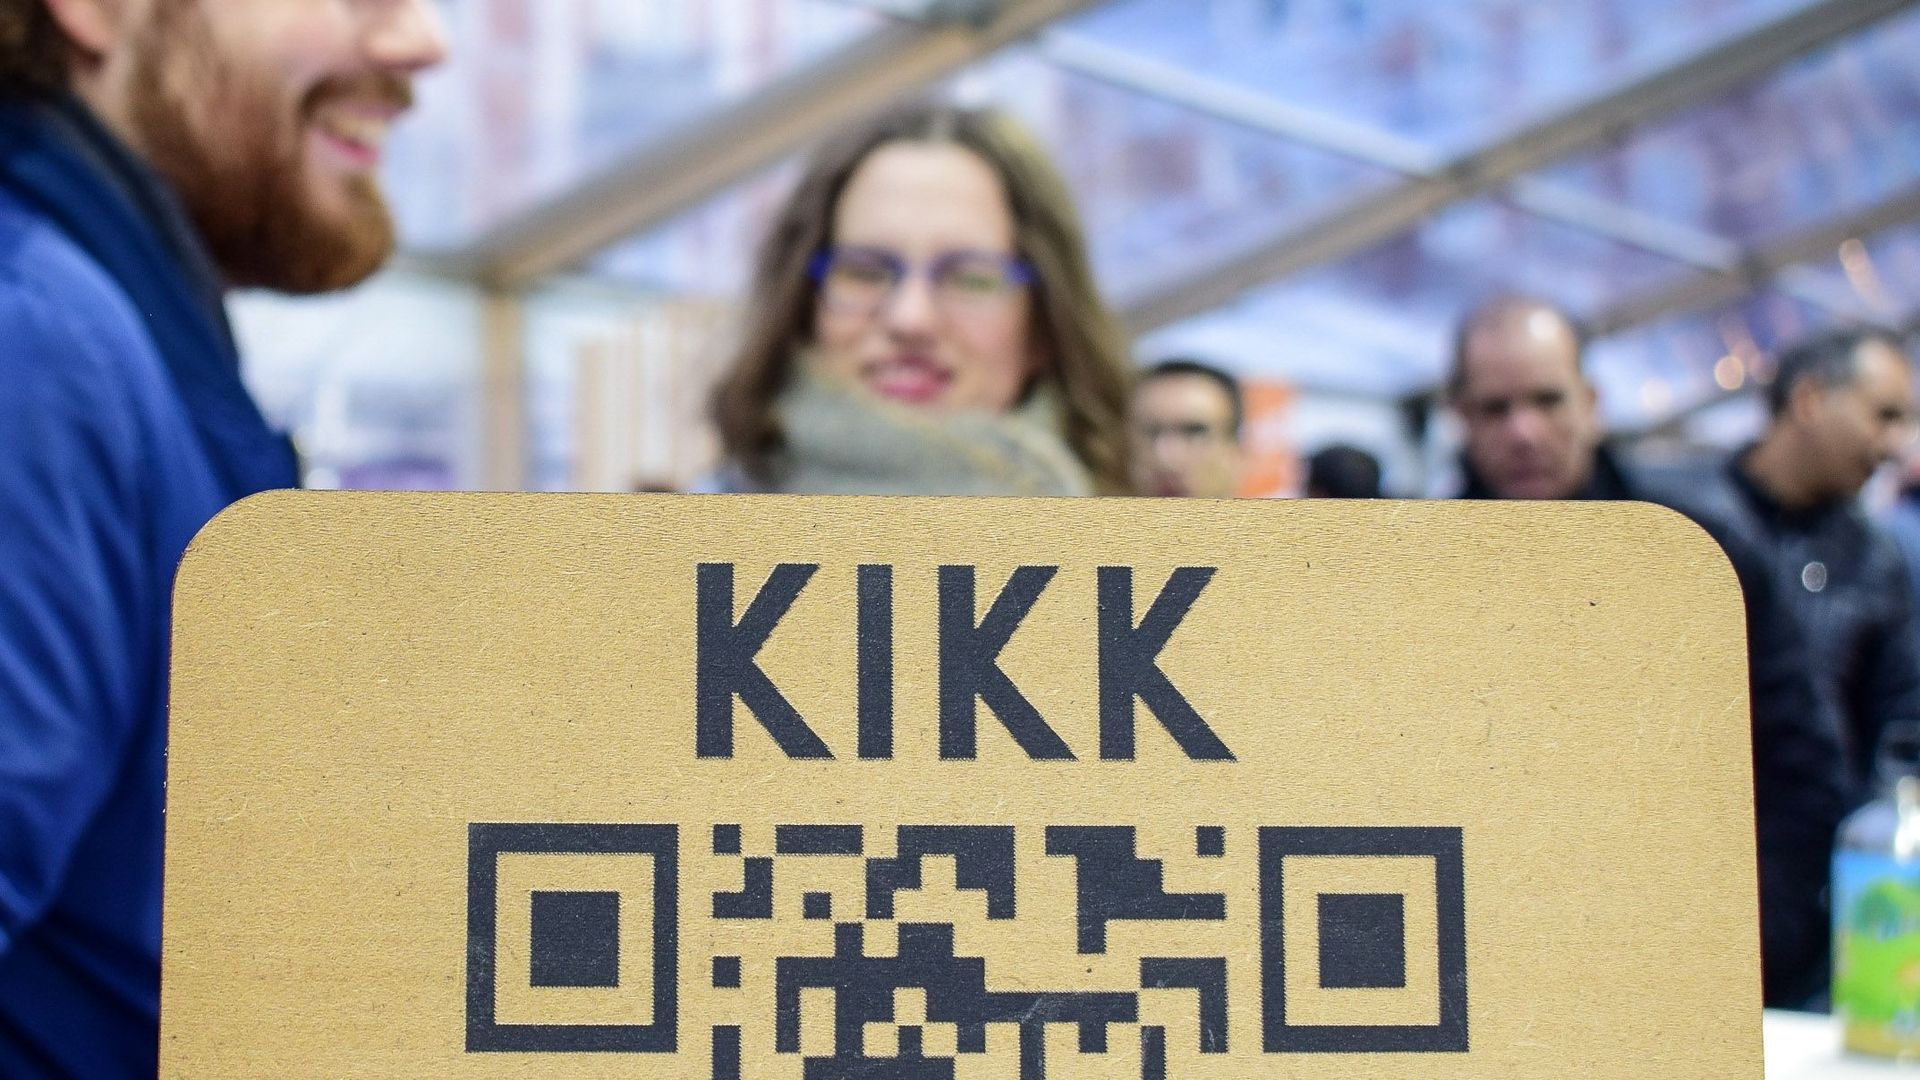 Le Kikk festival, événement dédié au digital et à la créativité, aura lieu jusqu'à ce dimanche